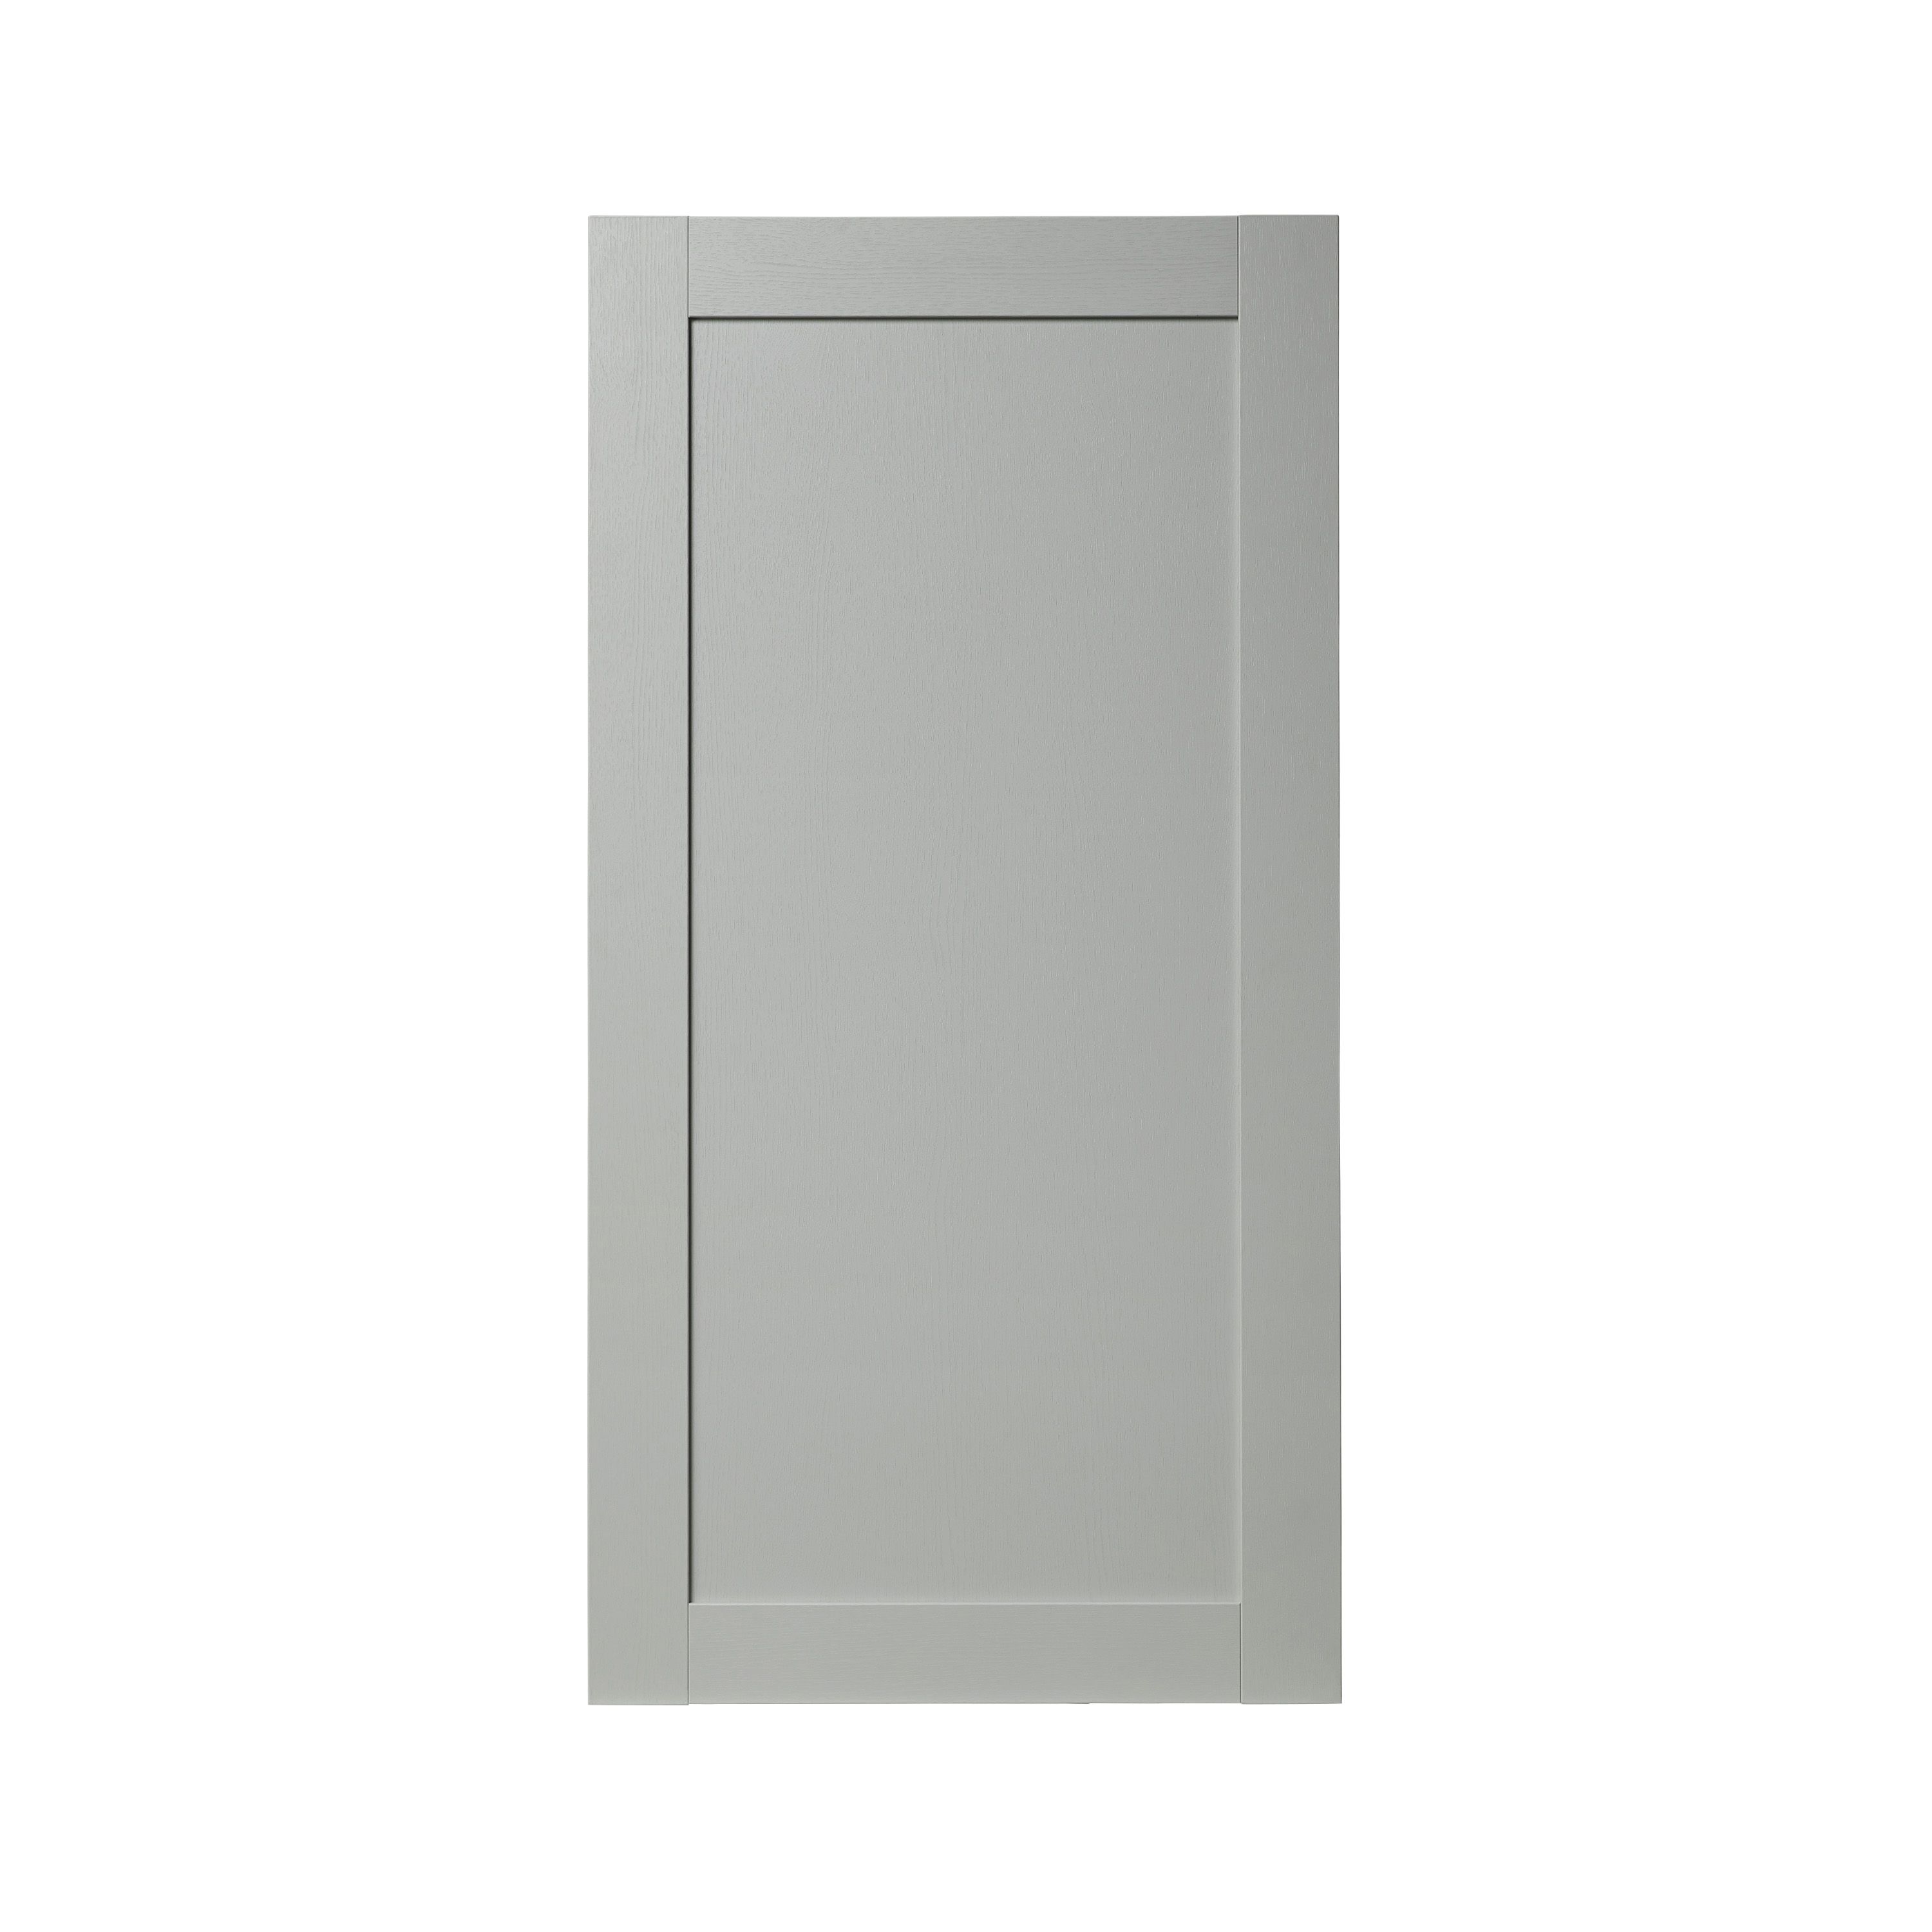 GoodHome Alpinia Matt grey painted wood effect shaker Tall larder Cabinet door (W)600mm (H)1181mm (T)18mm